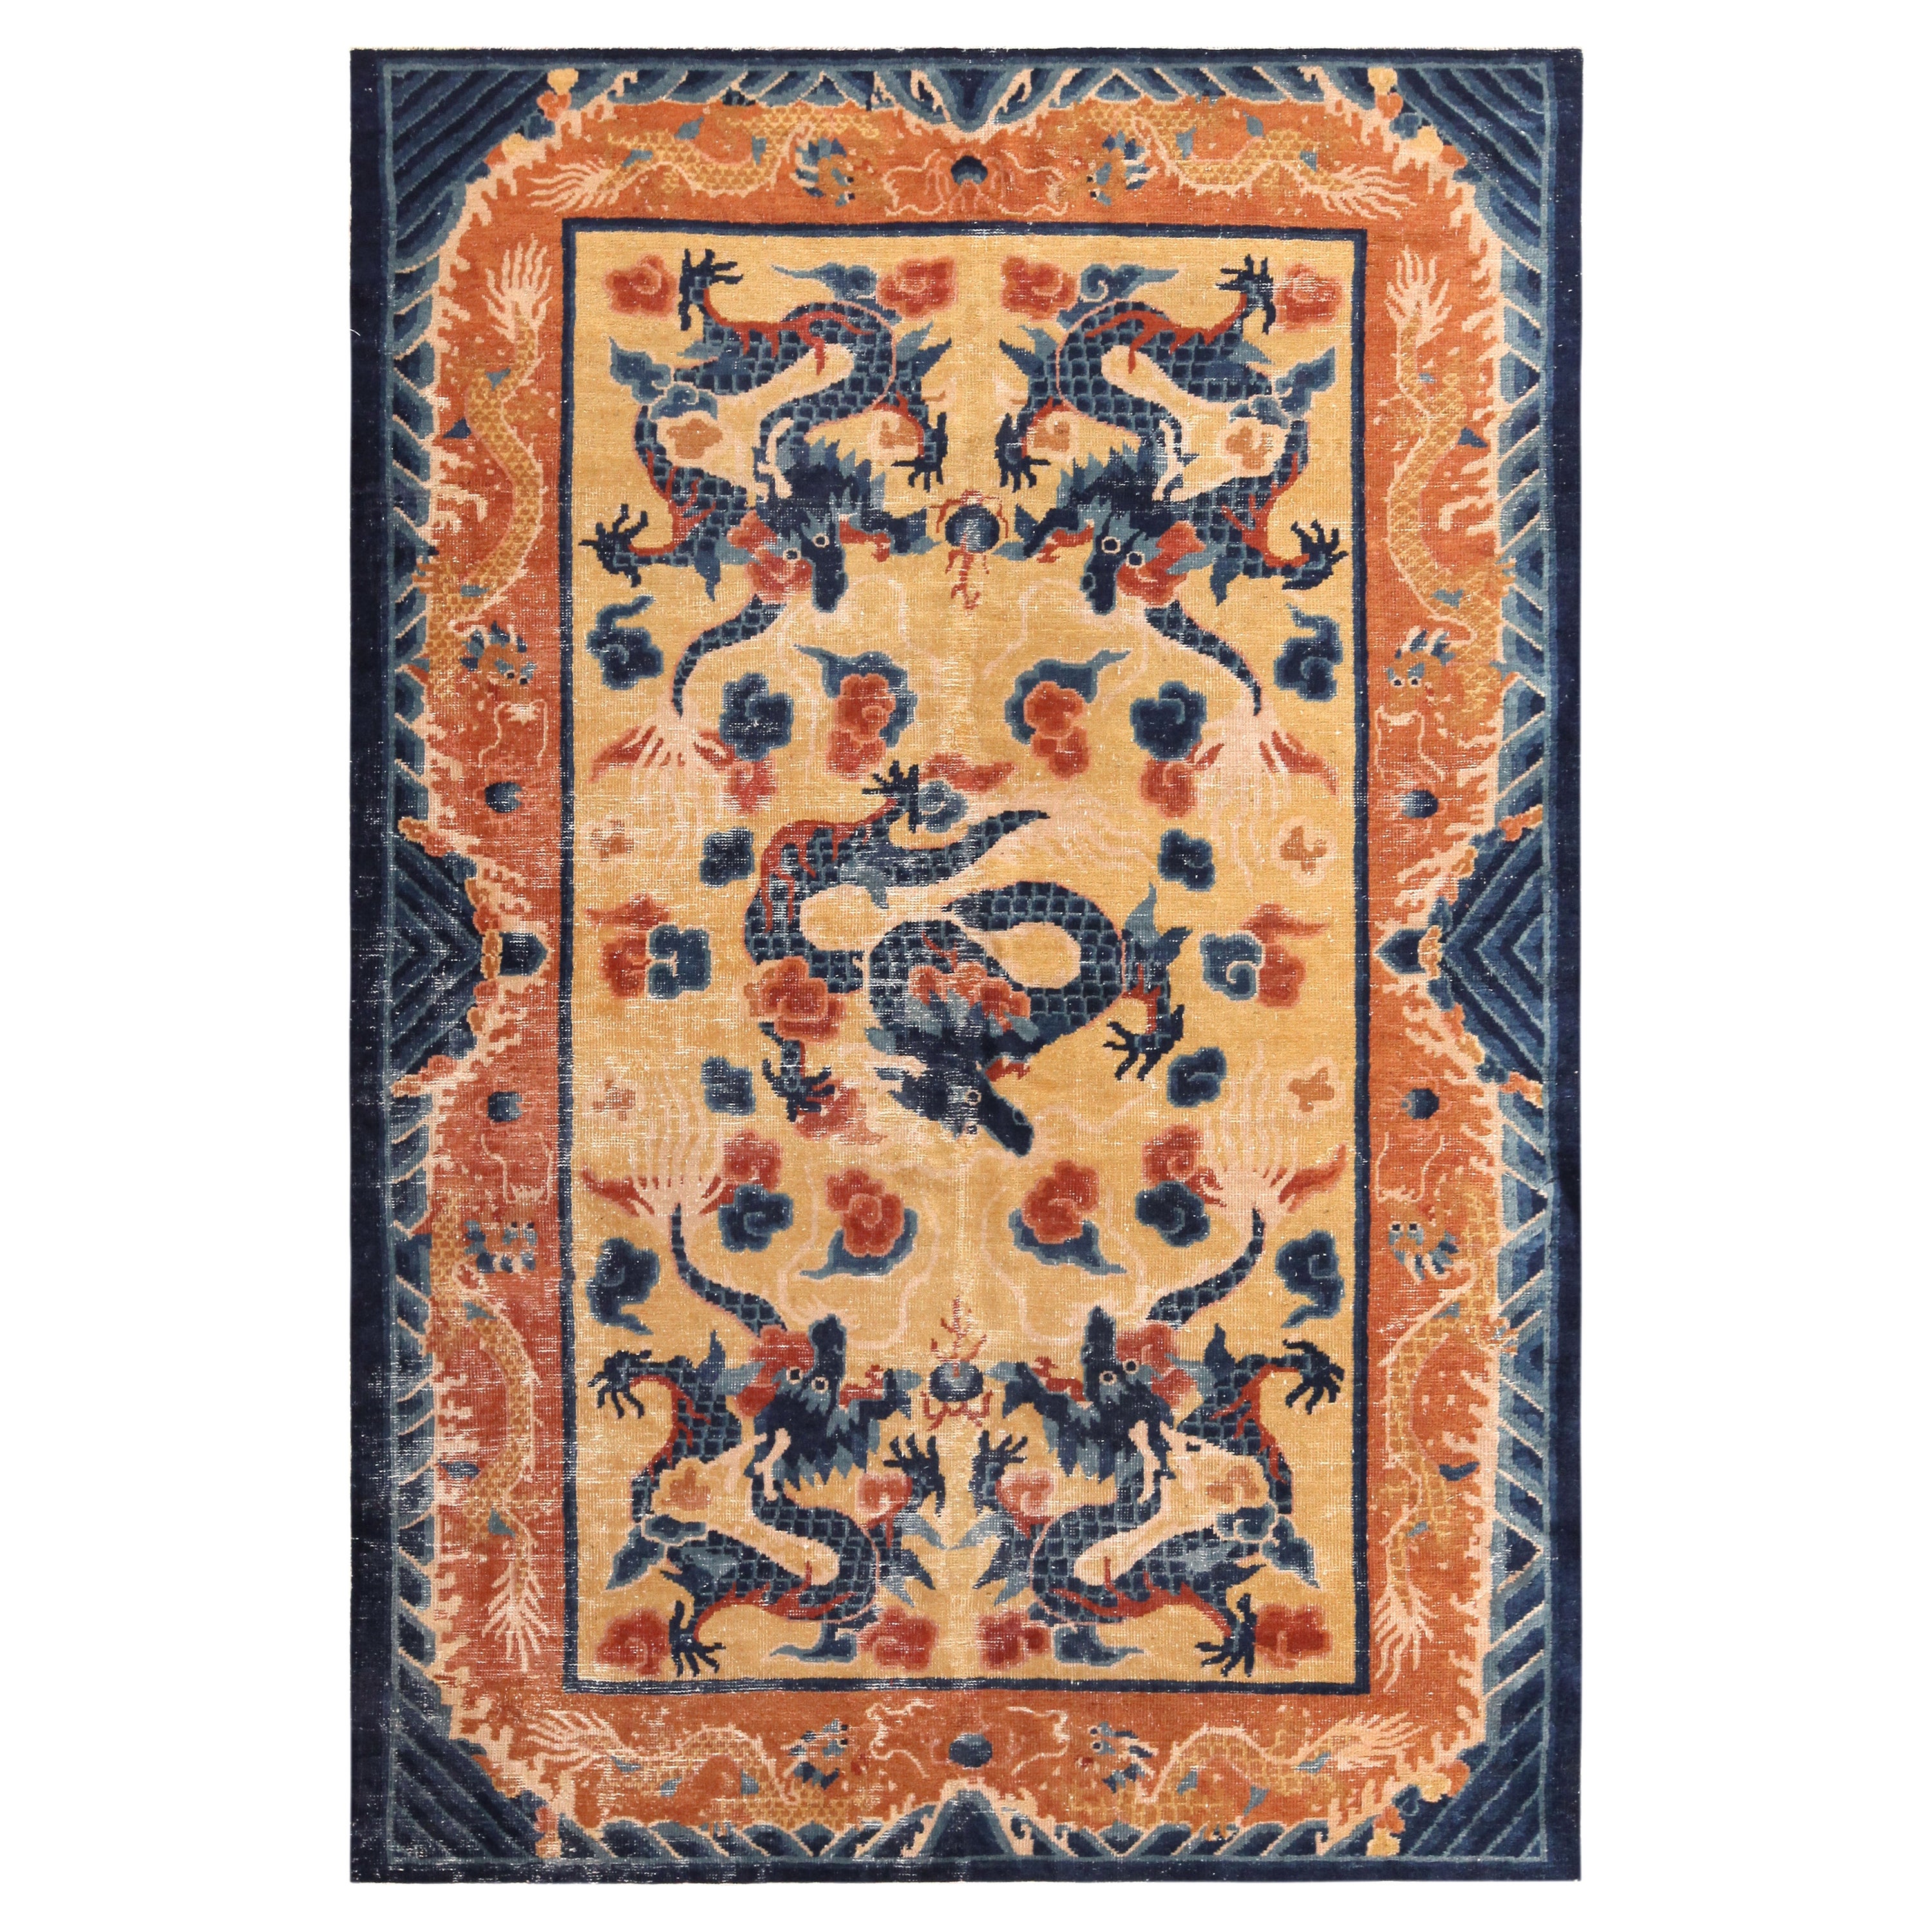 Antiker chinesischer Teppich im Drachendesign. 5 ft 3 in x 7 ft 8 in